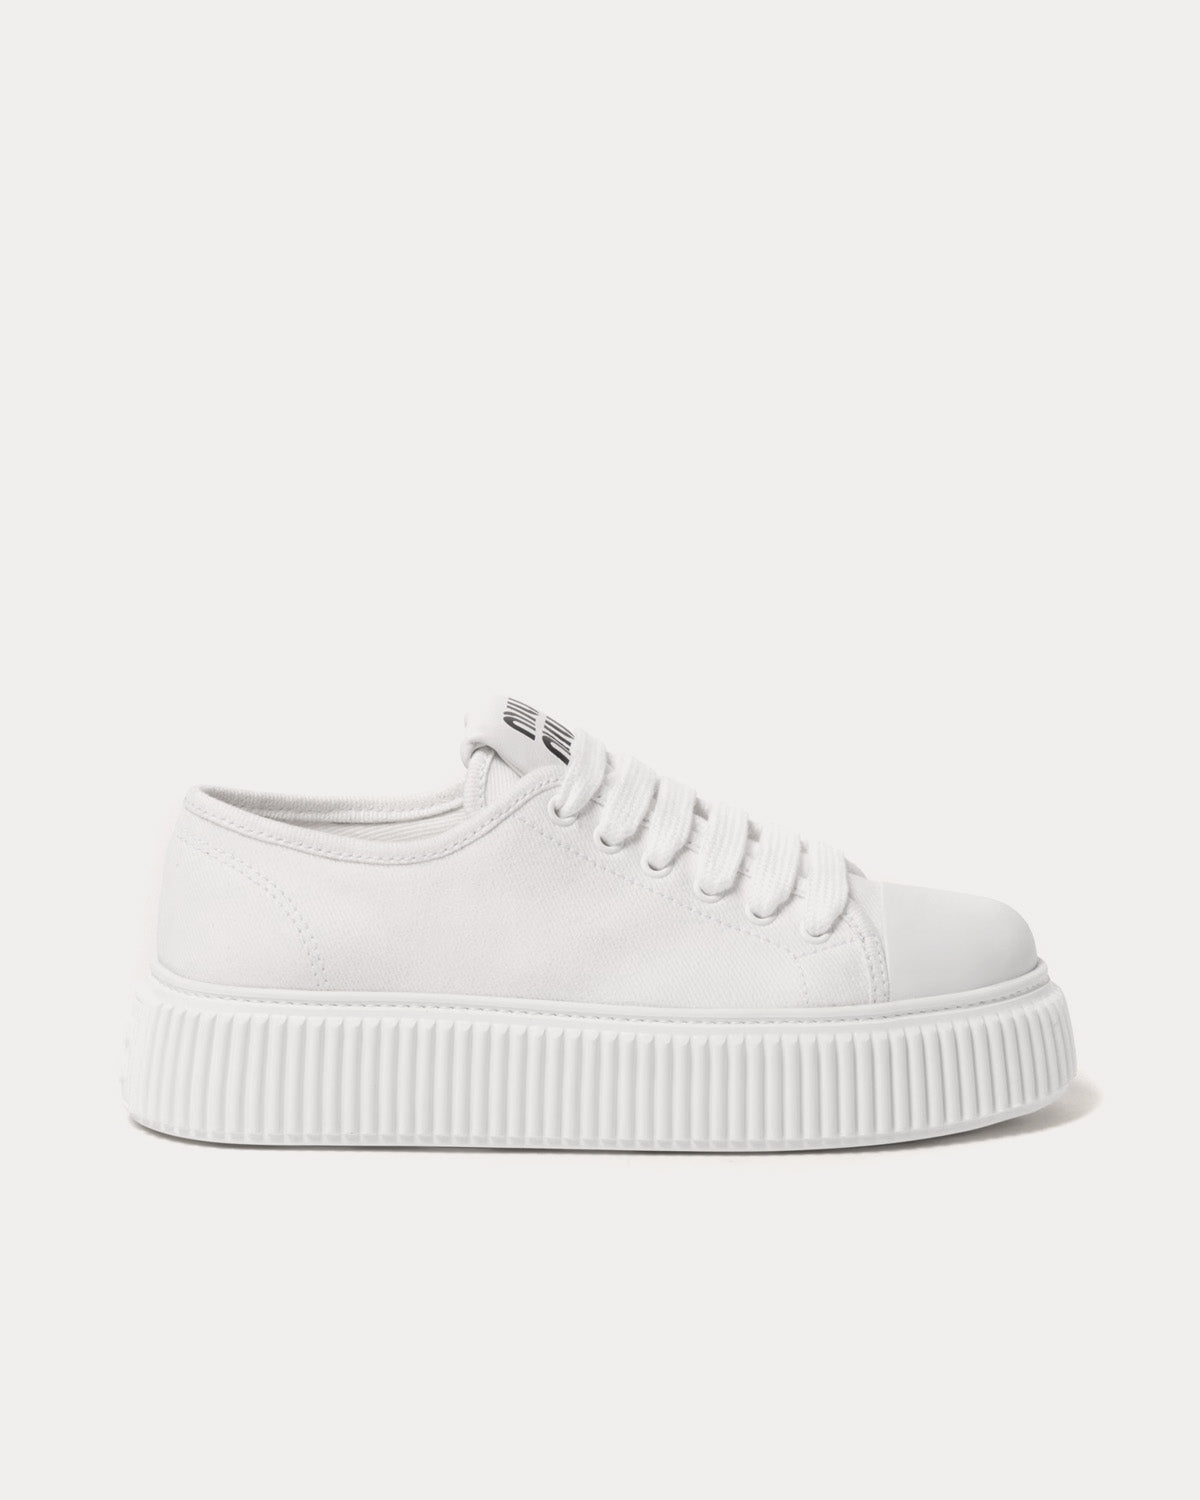 Miu Miu - Platform Denim White Low Top Sneakers